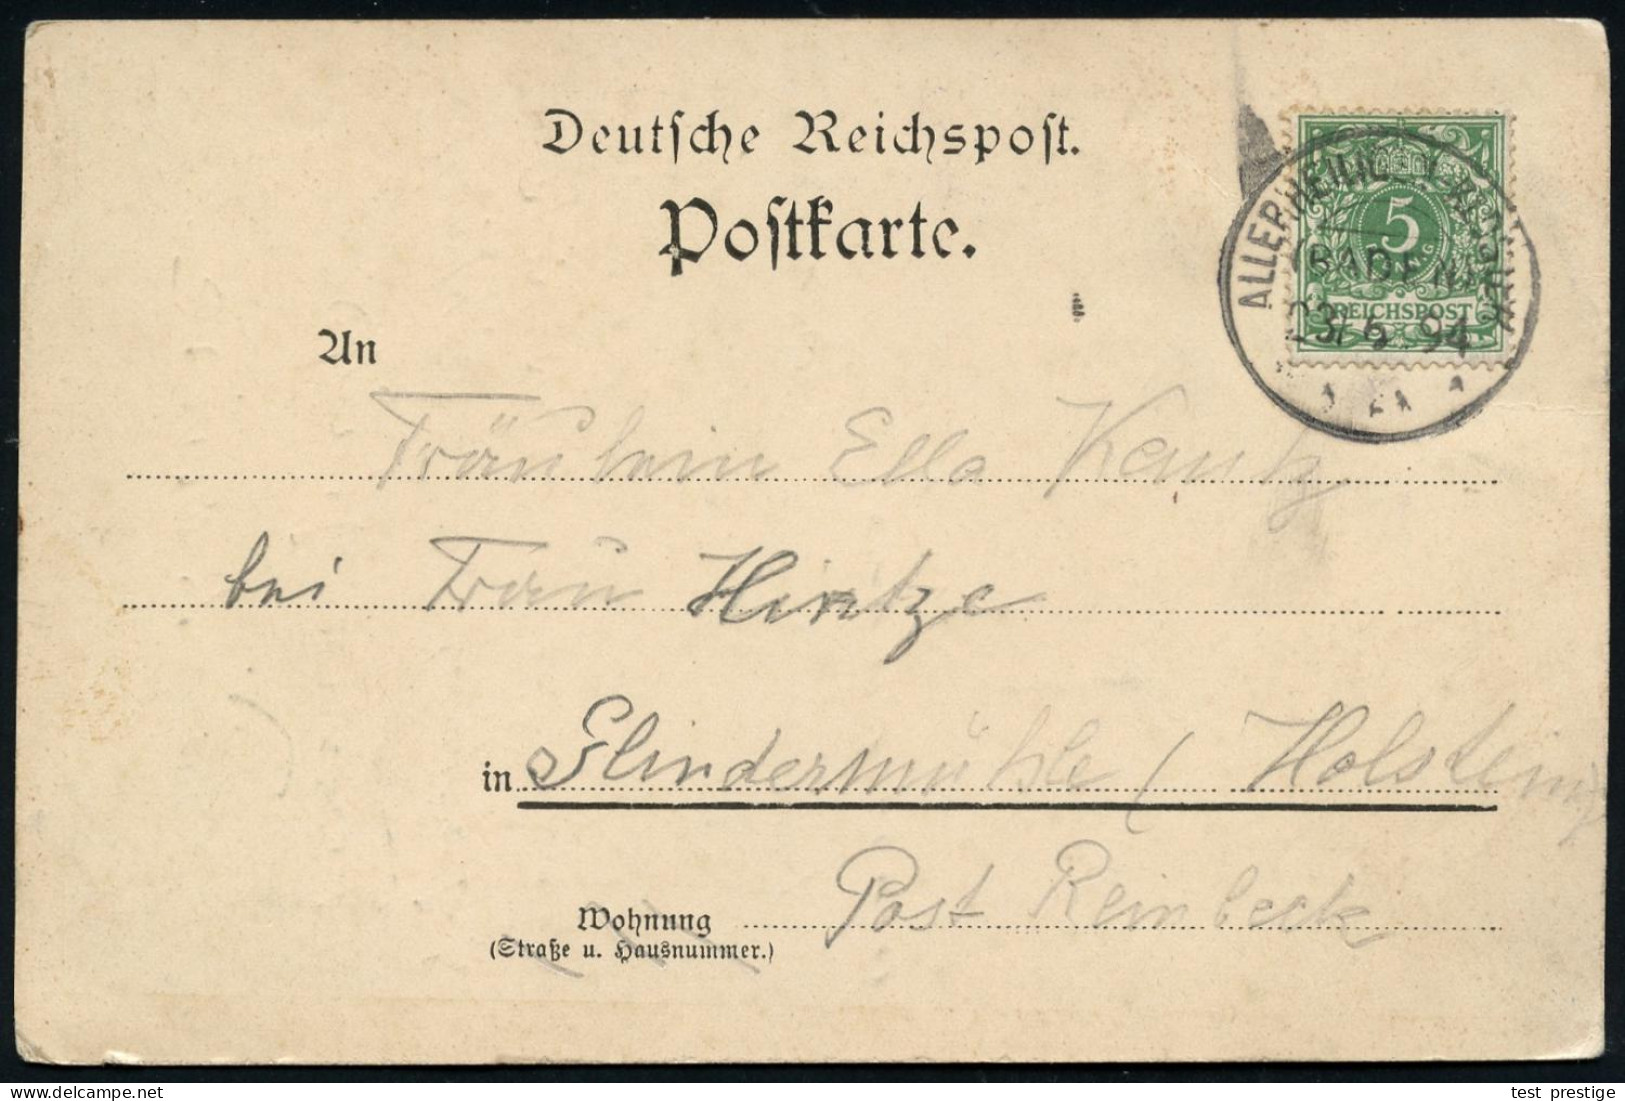 ALLERHEILIGEN-KLOSTER 1894 (3.6.) 1K-Segment Auf S/w.-Ak-Vorläufer: ALLERHEILIGEN Mit Kloster-Ruine , Bedarf - KLÖSTER & - Abbeys & Monasteries